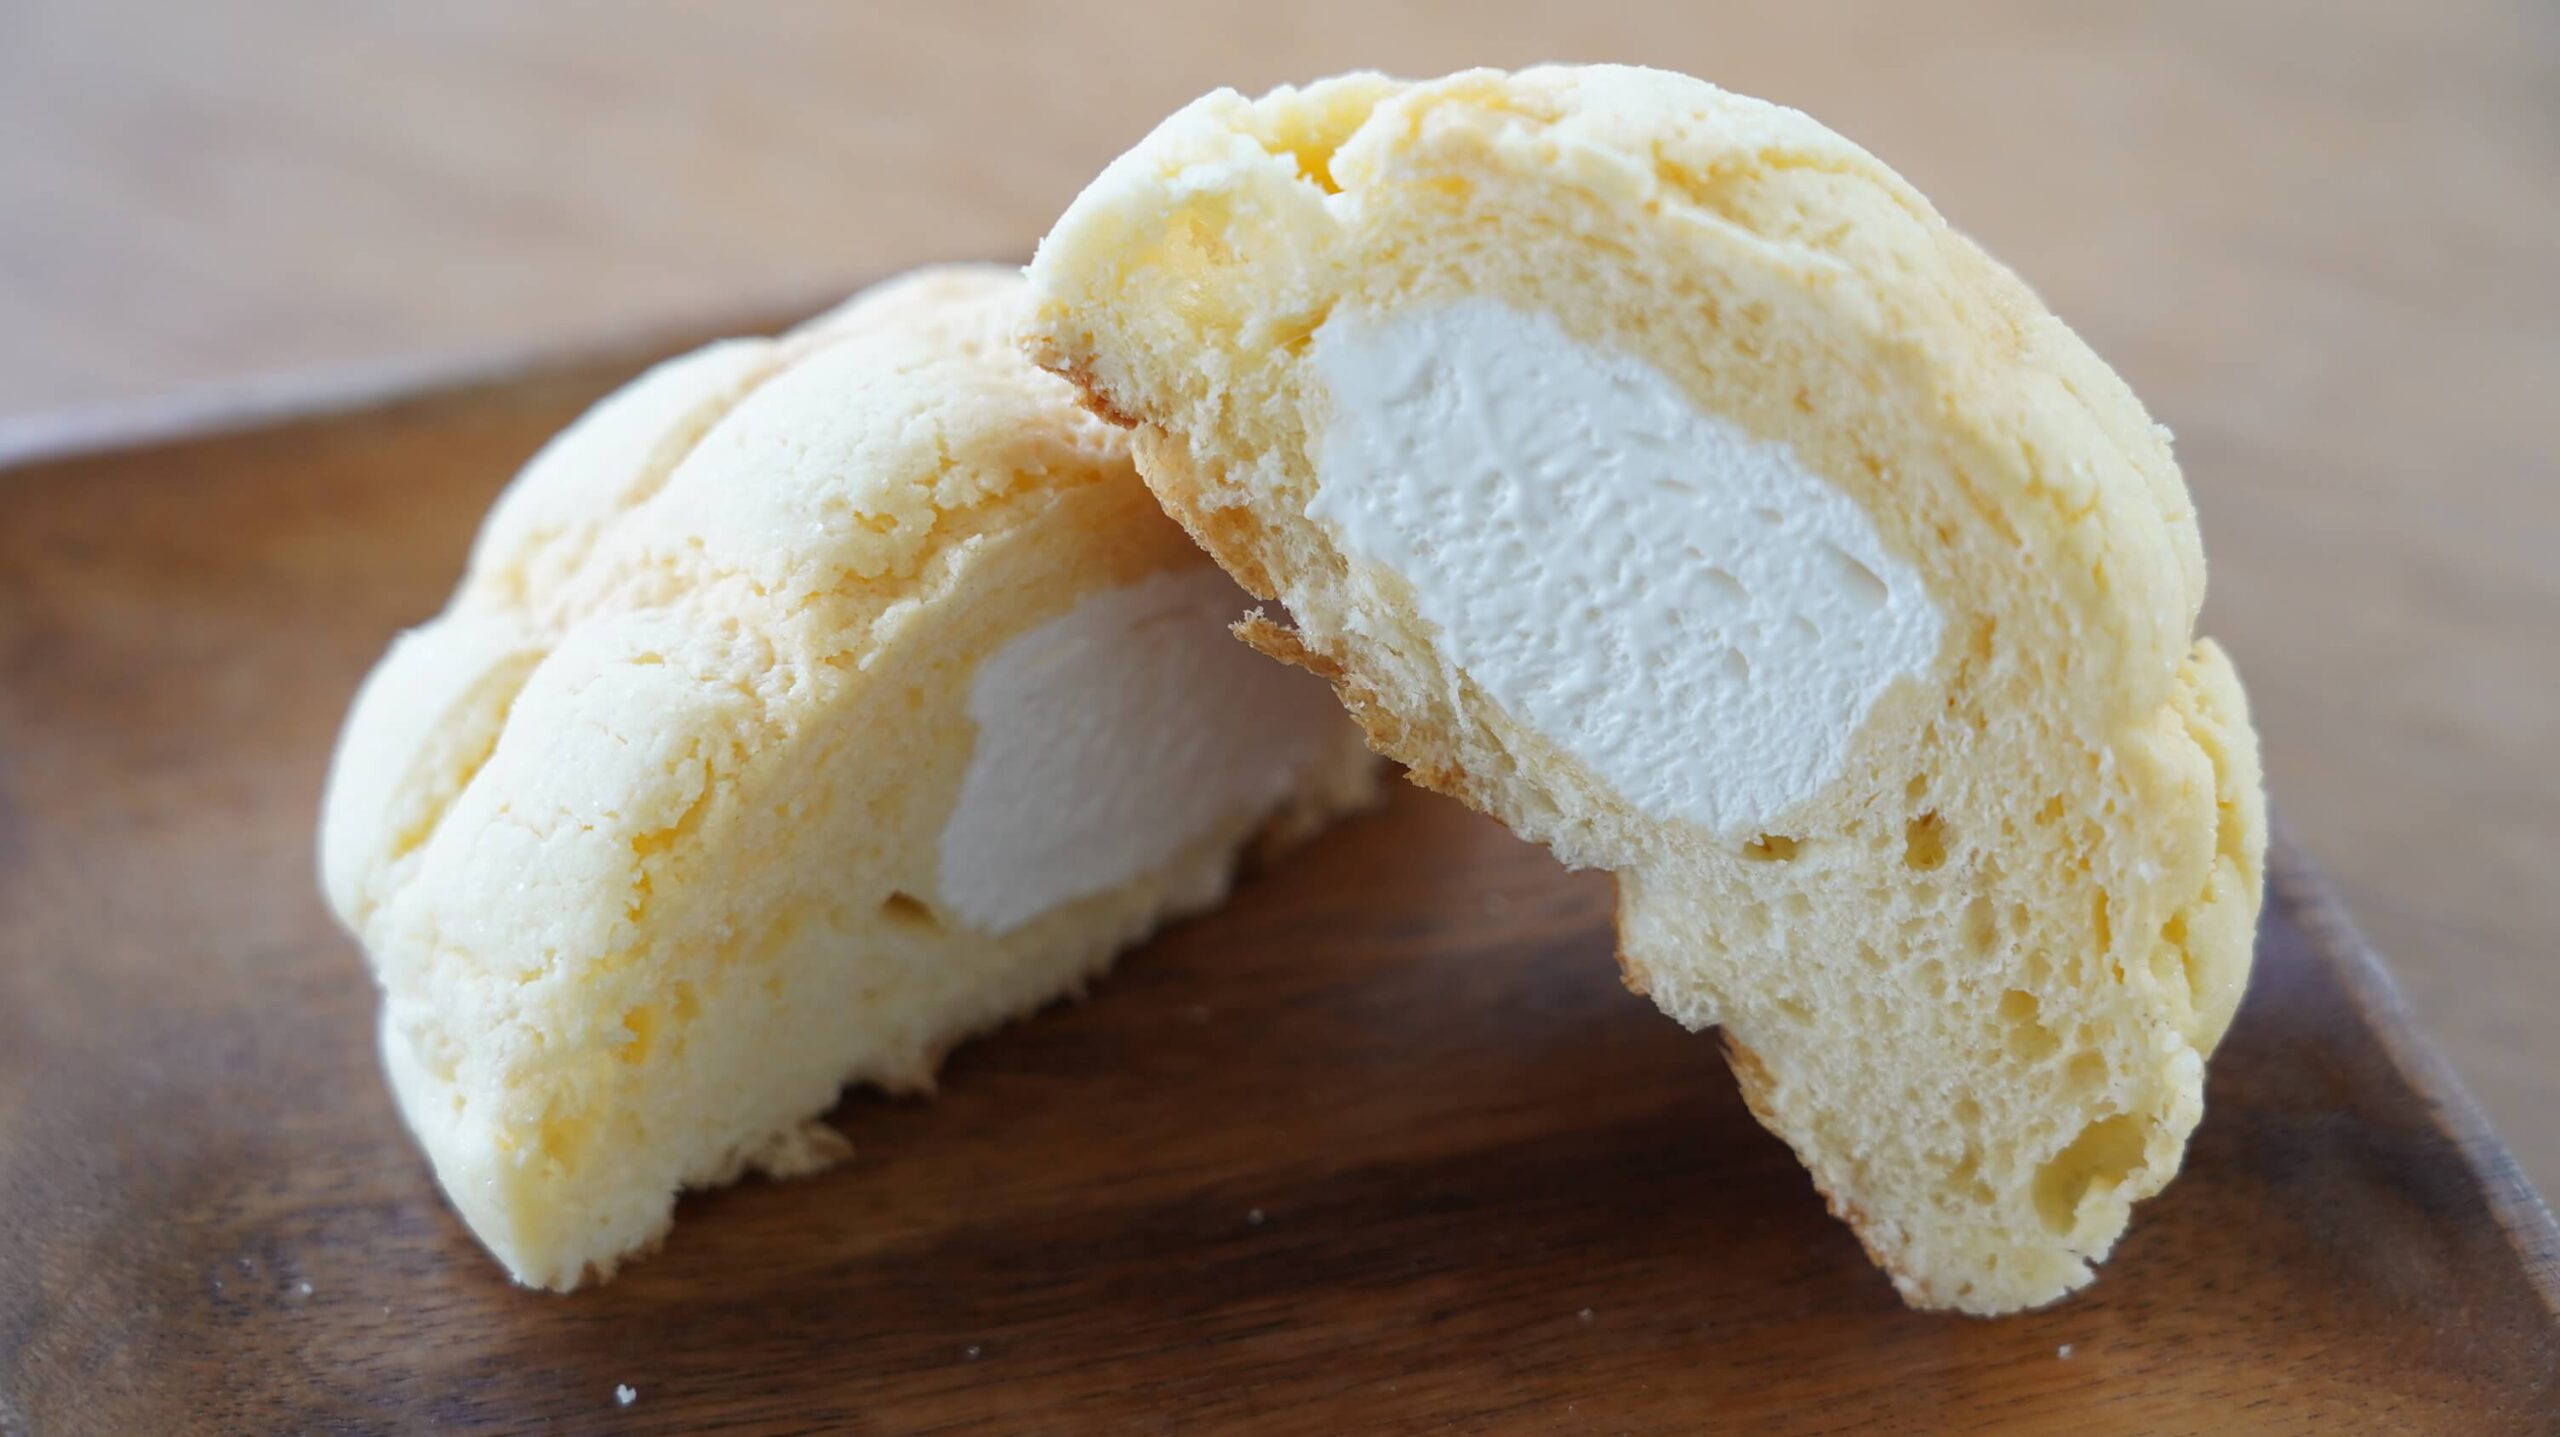 セブンイレブンのおすすめ冷凍食品「冷たく食べるメロンパン」の断面の写真